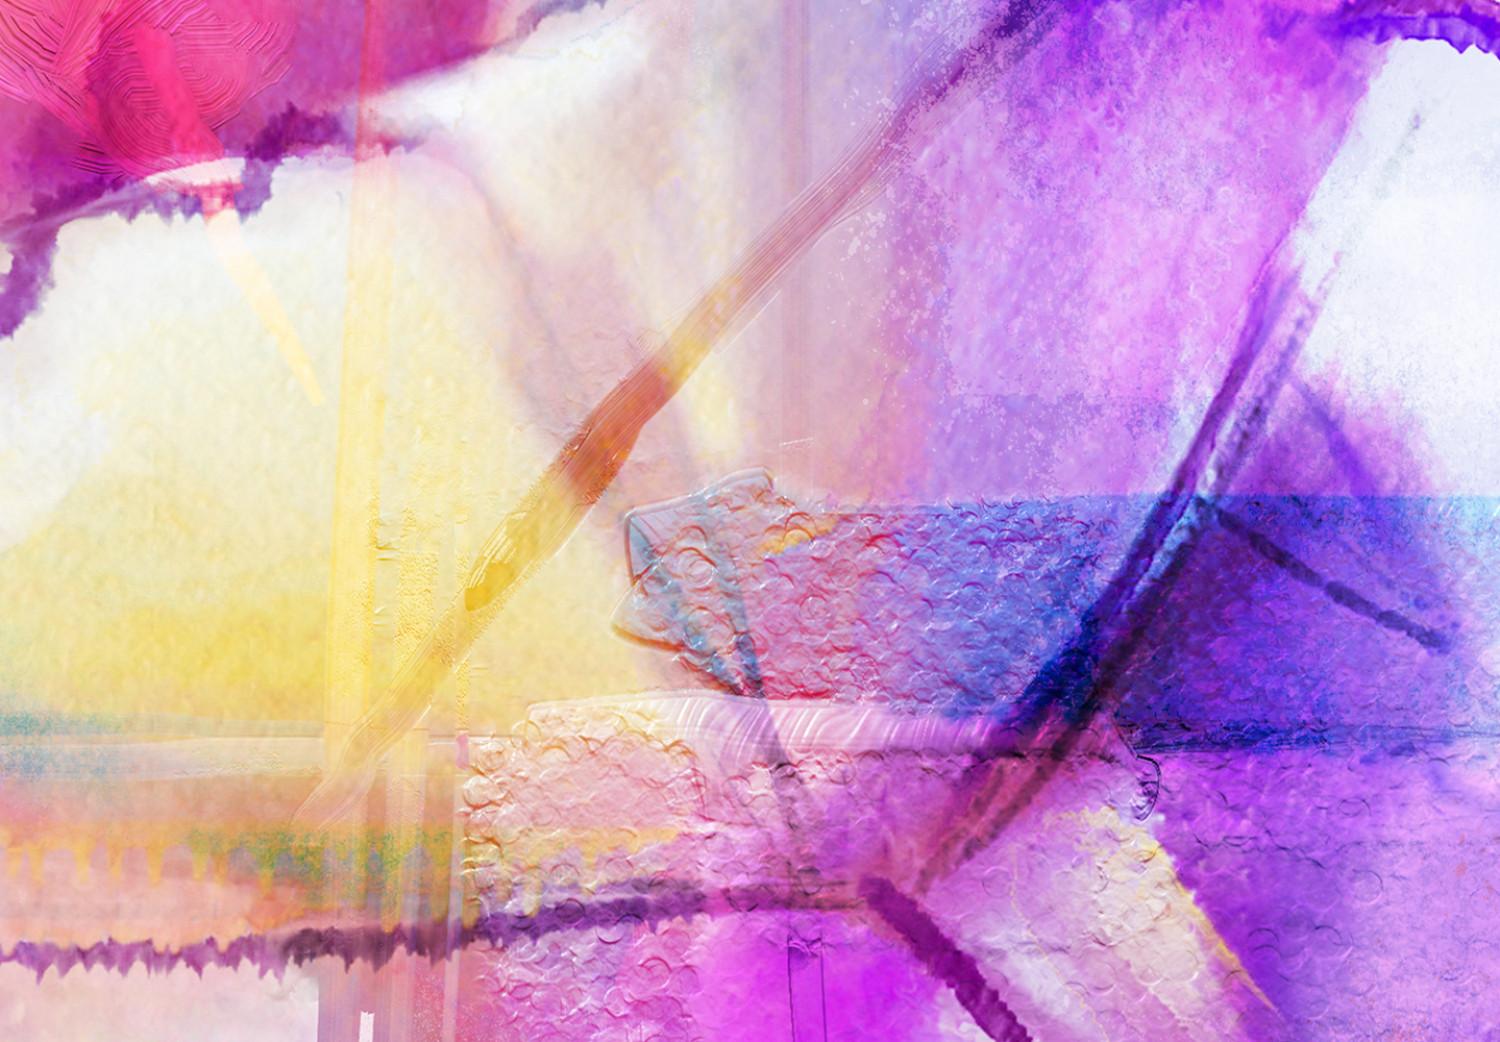 Cuadro decorativo Colores locos (1 pieza) ancho - acuarelas en abstracción de colores